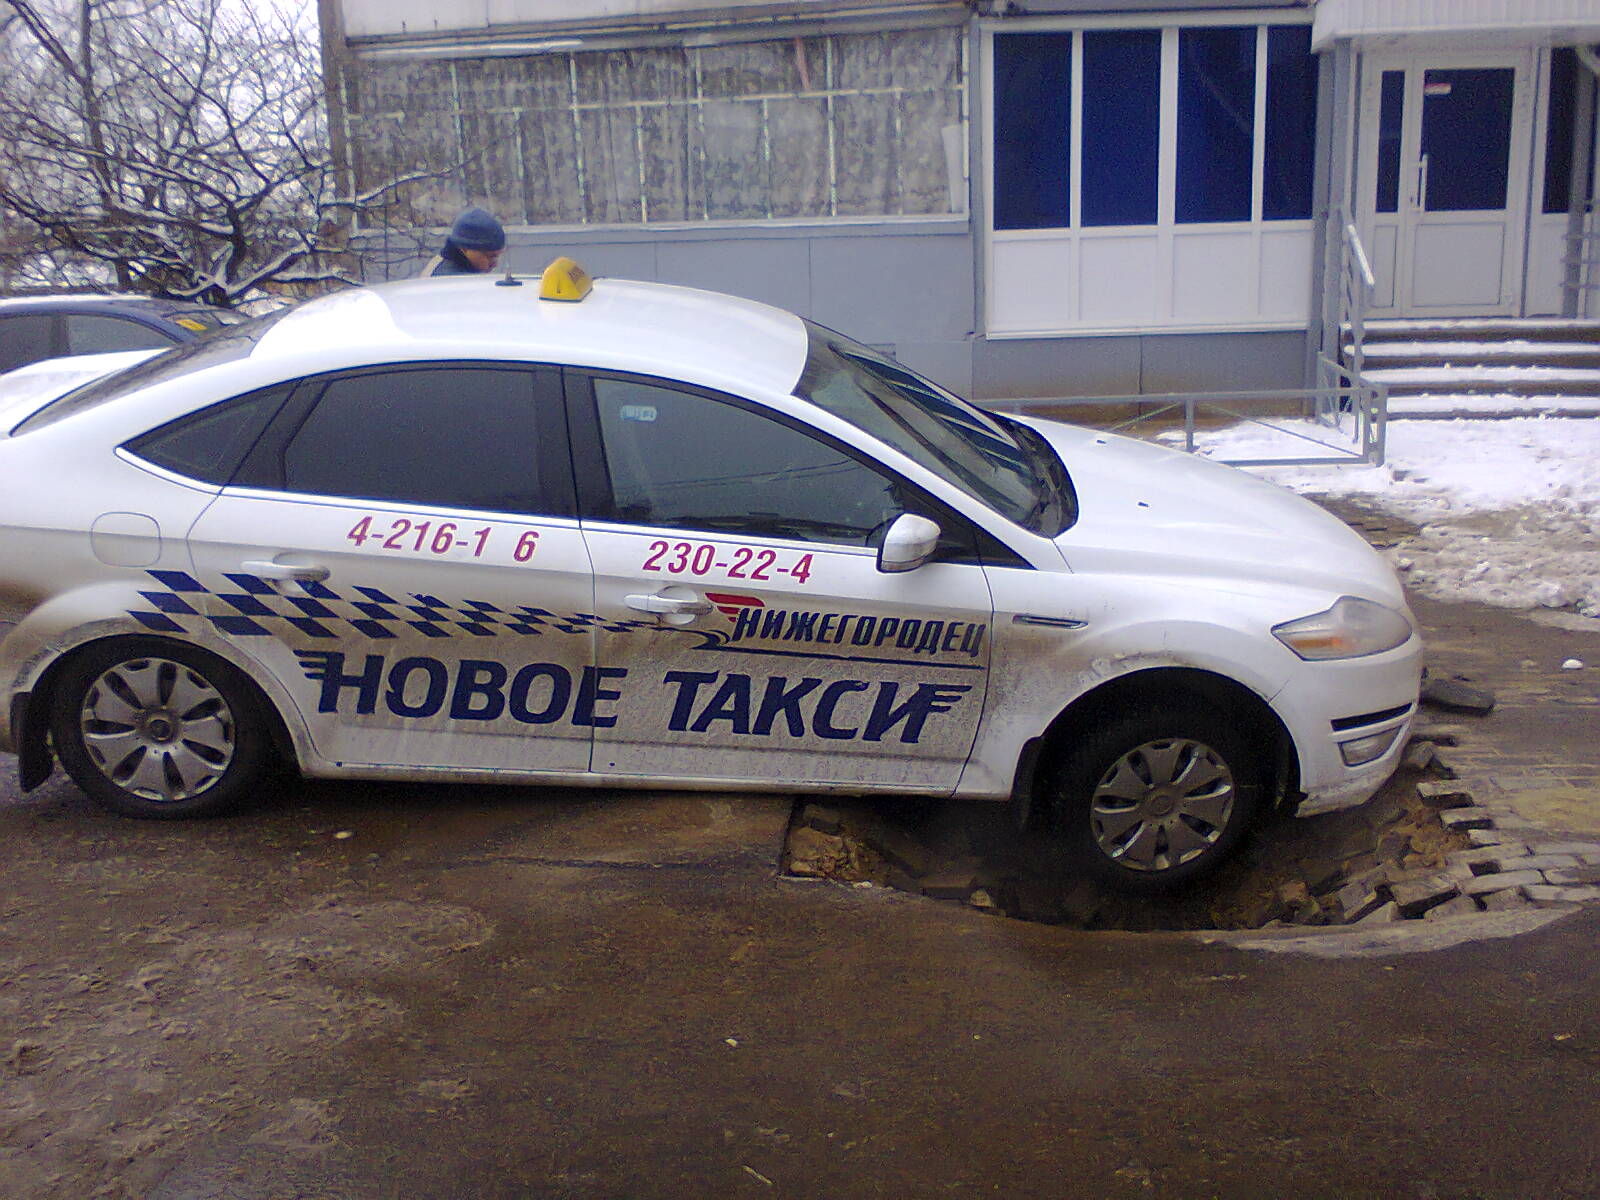 Таксопарк Нижегородец. Новое такси. Такси Нижегородец в Нижнем Новгороде. Таксопарк новые